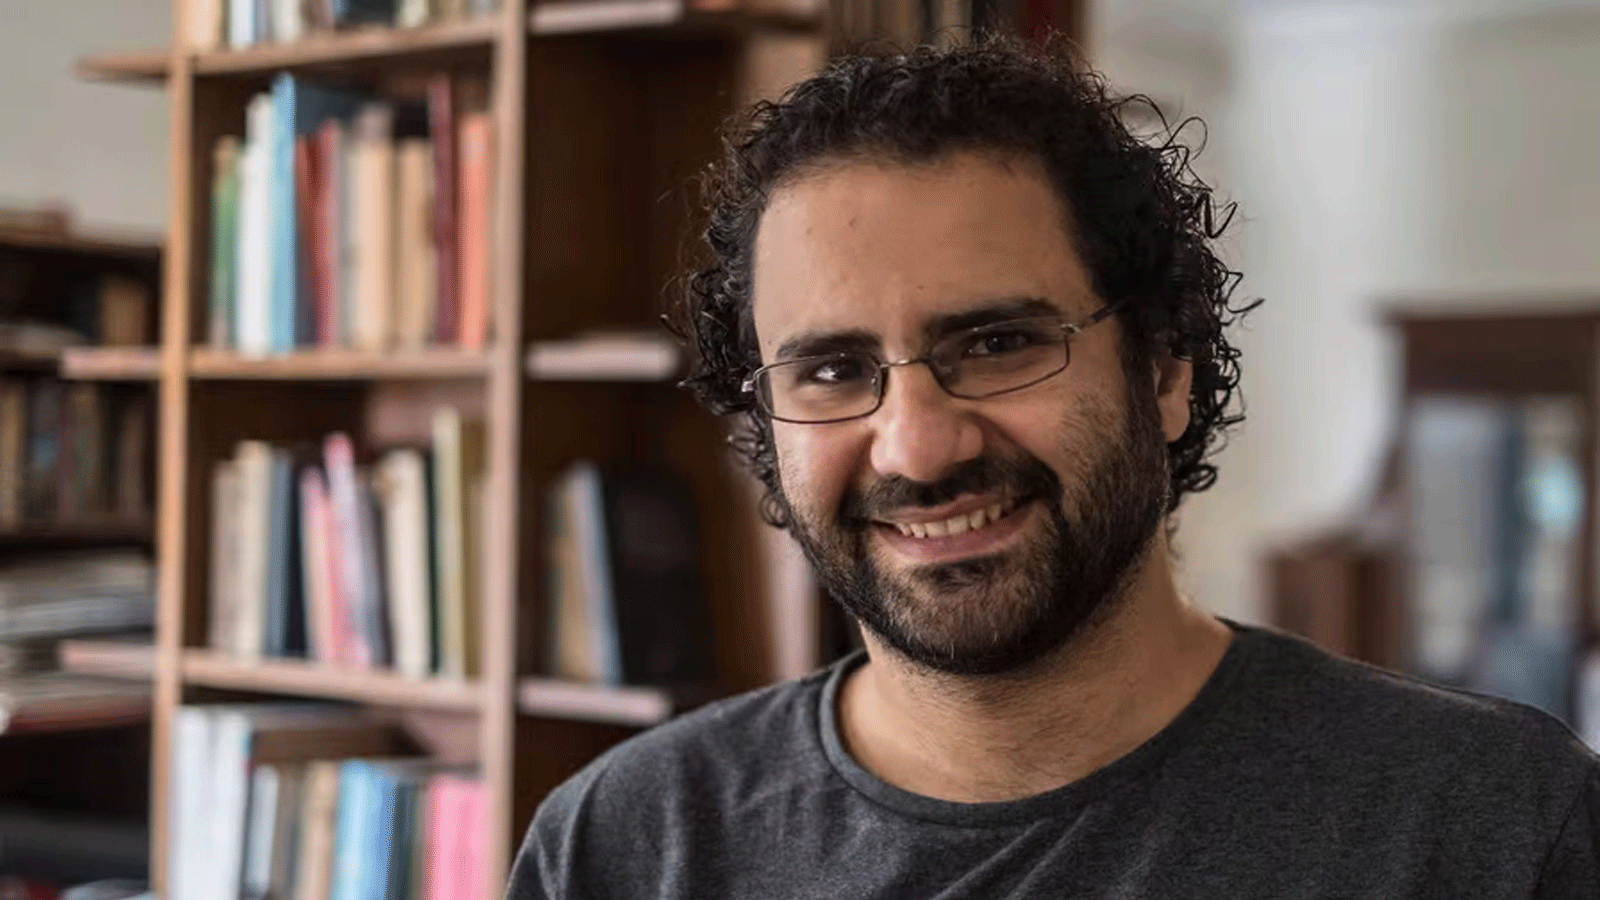 لقطة للناشط والمدون المصري علاء عبد الفتاح منذ العام 2019.